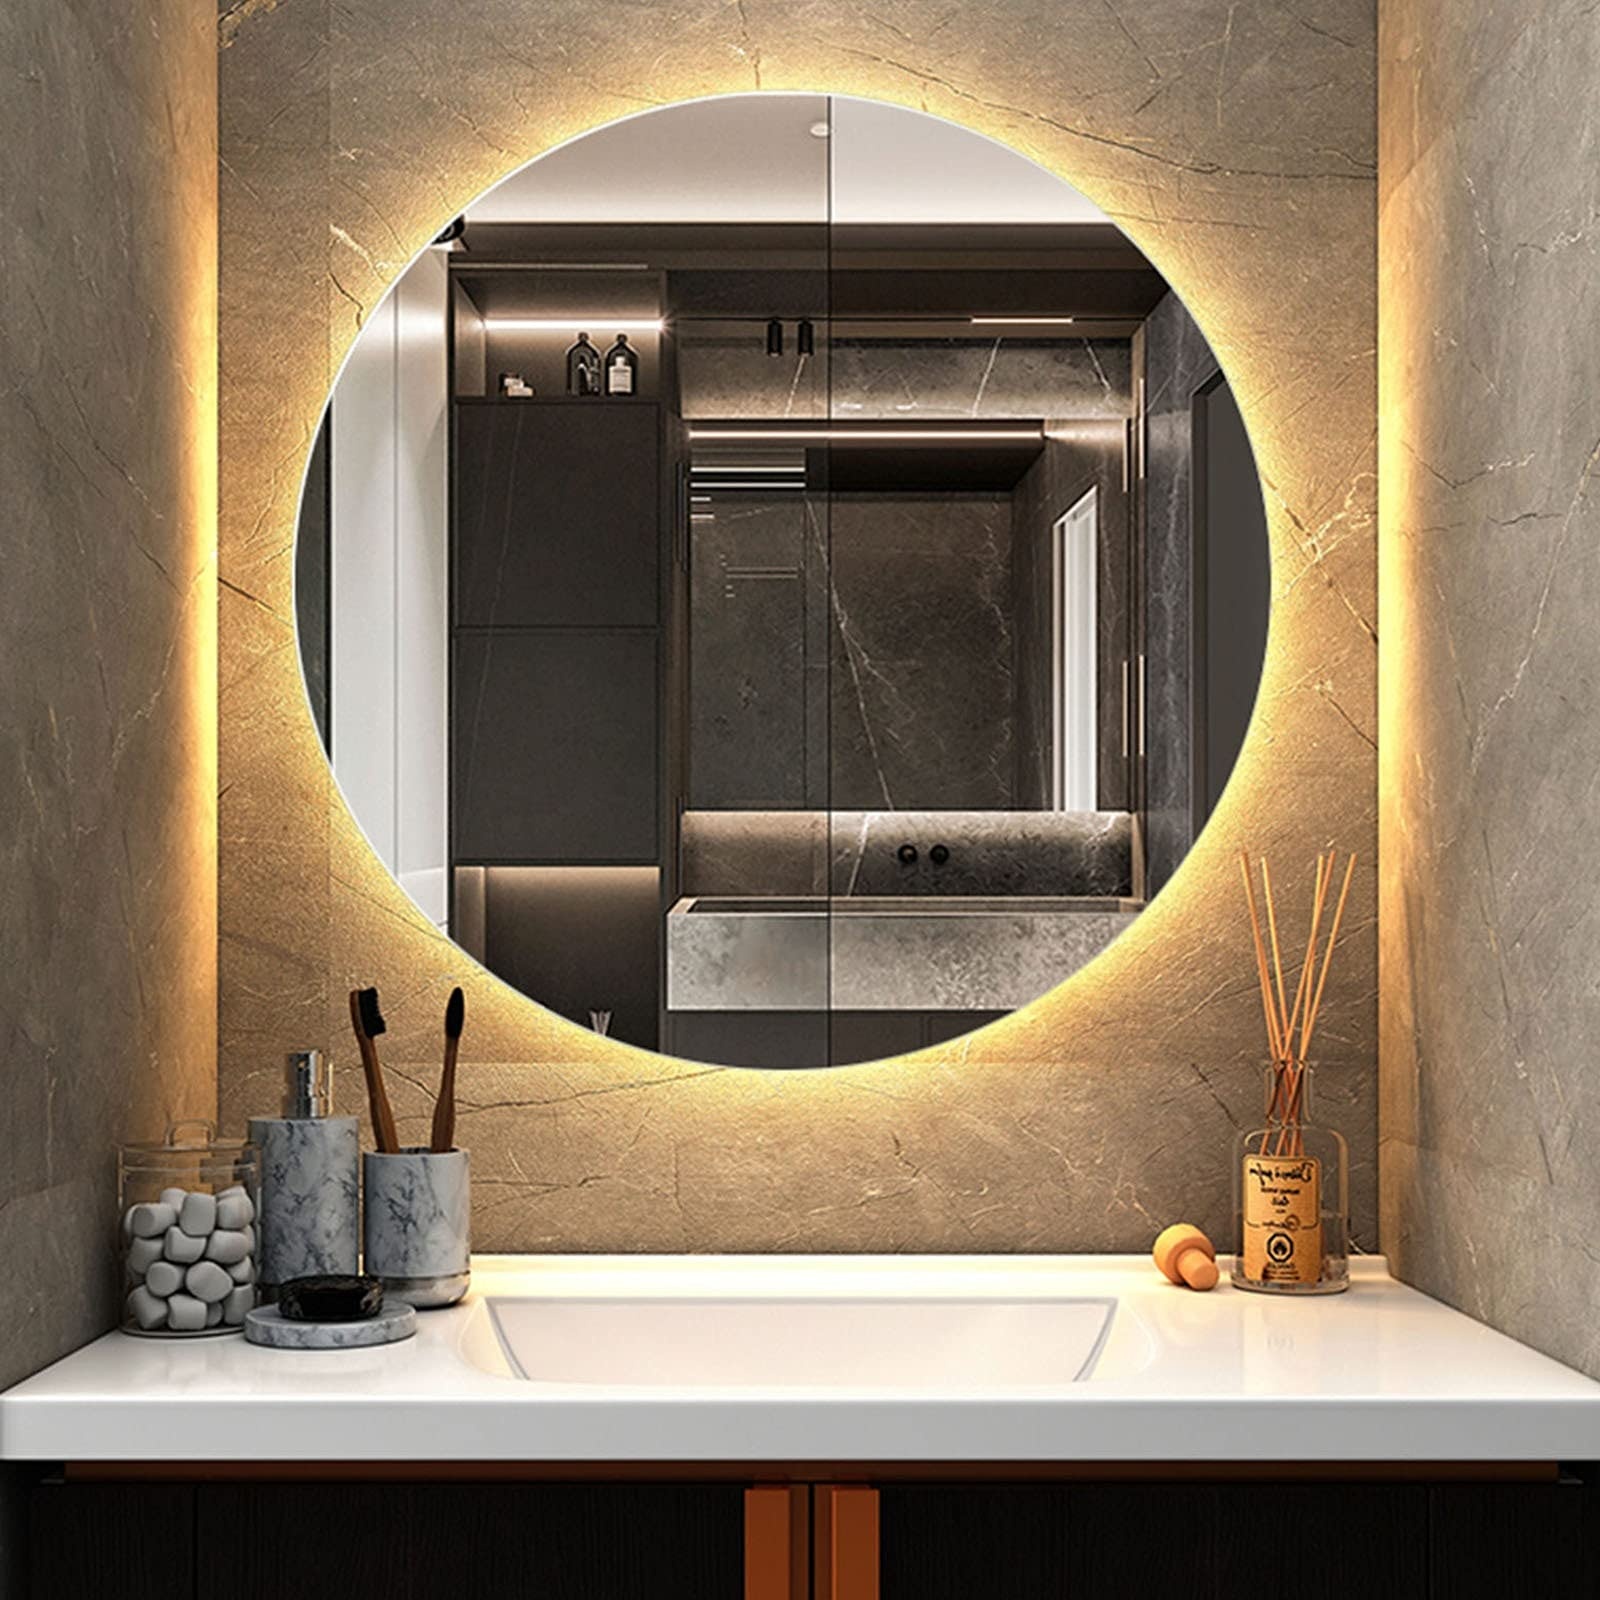 Bathroom mirror Spiegel Mit Hintergrundbeleuchtung, Runder Kosmetikspiegel Mit Lichtern, LED-beleuchteter IP64 Wasserdichter Badezimmerspiegel, Wandspiegel (Color : Warm Light 3200k, Size : 60x60cm)